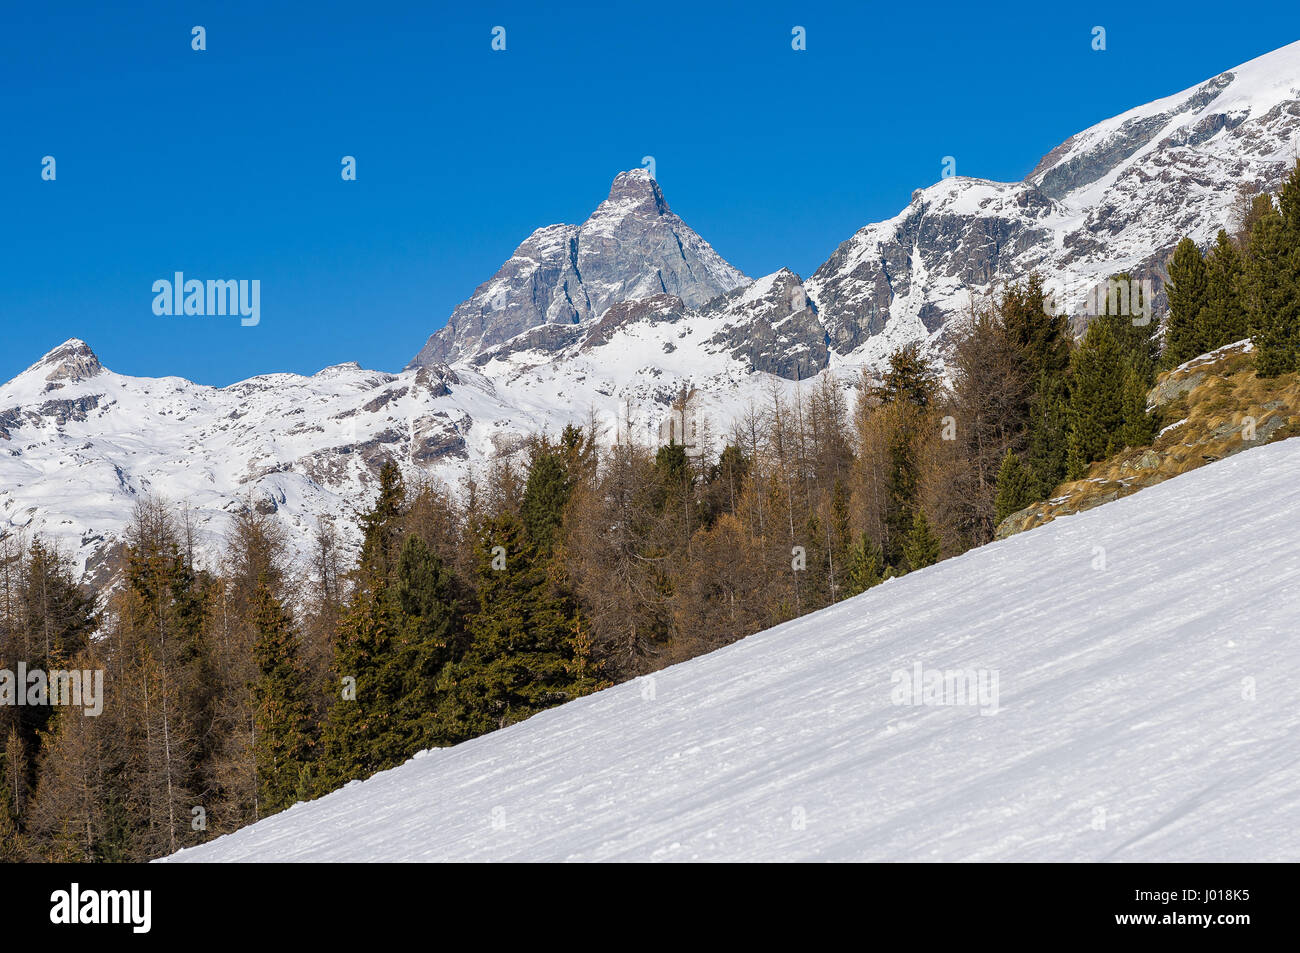 Cervin vu de la station de ski de Champoluc pendant la saison d'hiver Banque D'Images